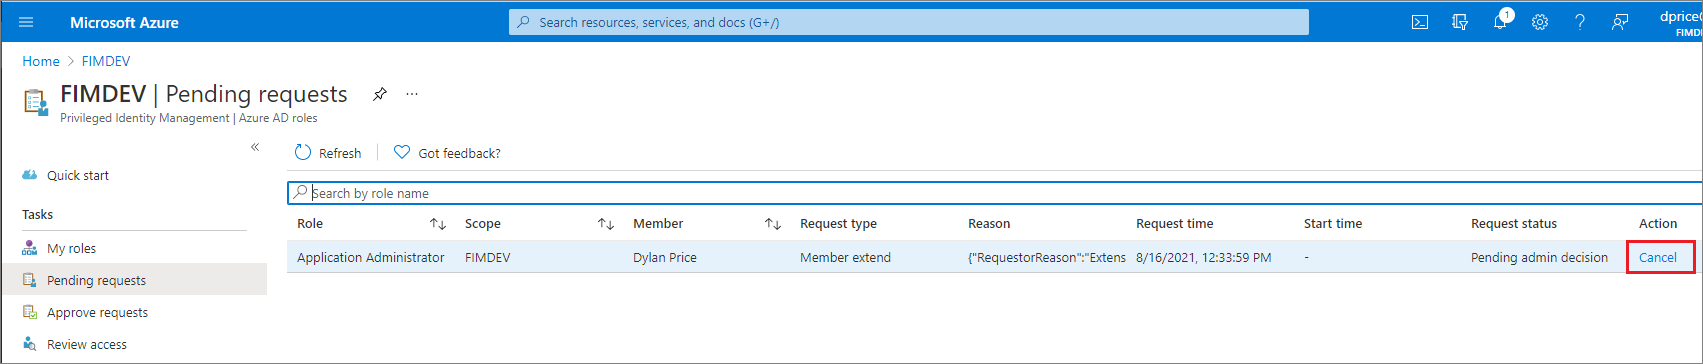 保留中の要求とキャンセルのためのリンクが一覧表示されている [Microsoft Entra ロール] - [保留中の要求] ページを示すスクリーンショット。